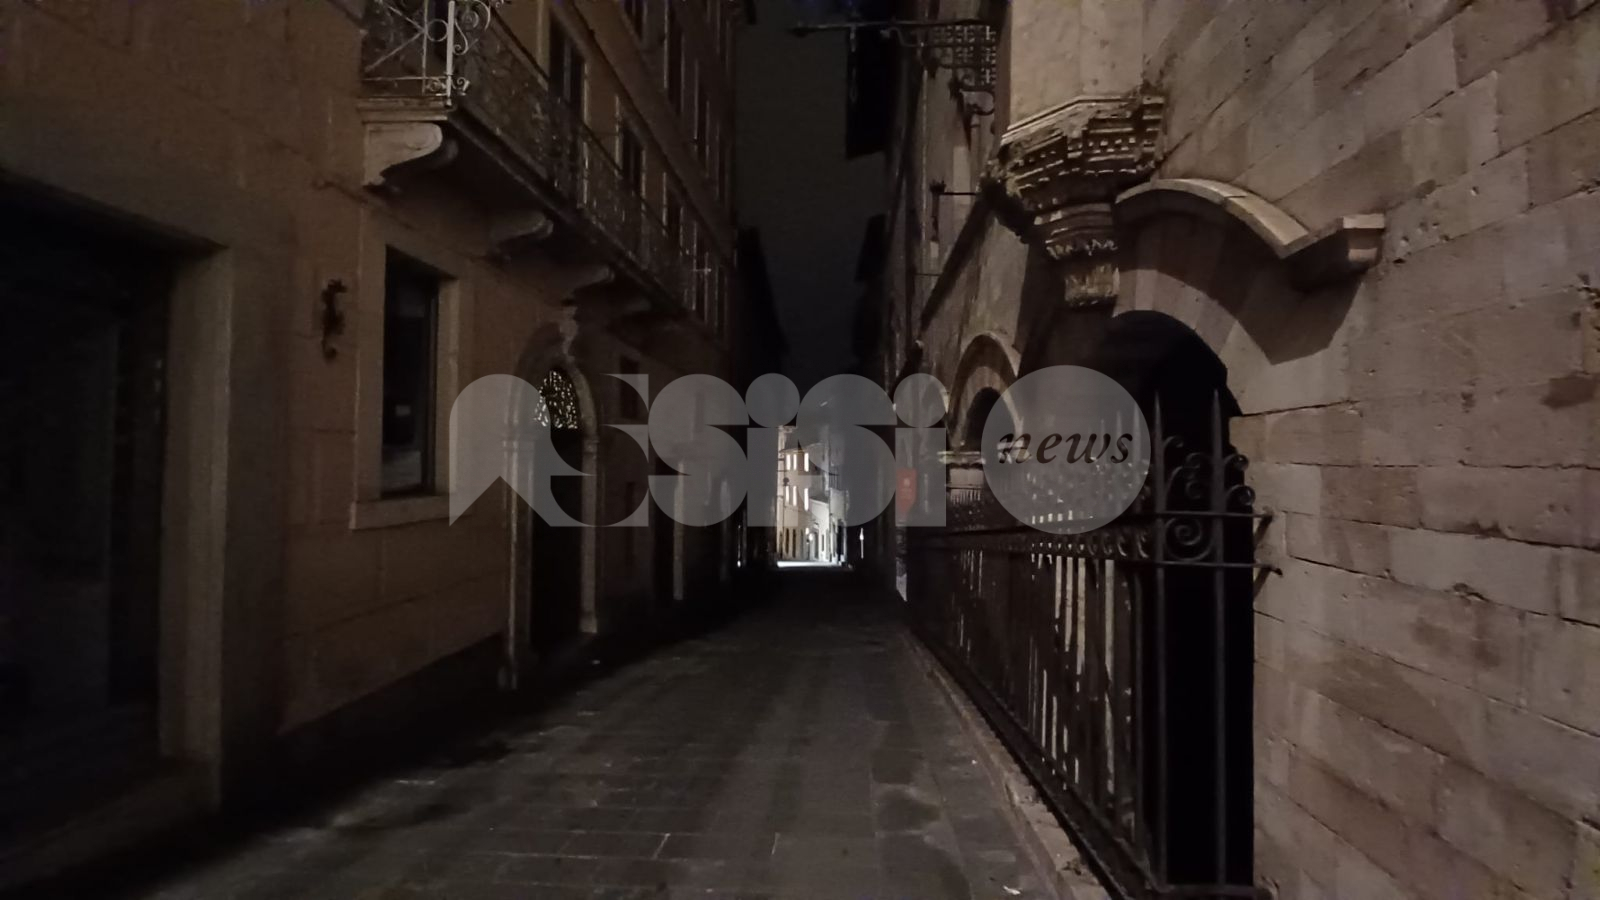 Pubblica illuminazione ad Assisi, accensione ritardata e spegnimento anticipato per contenere i costi